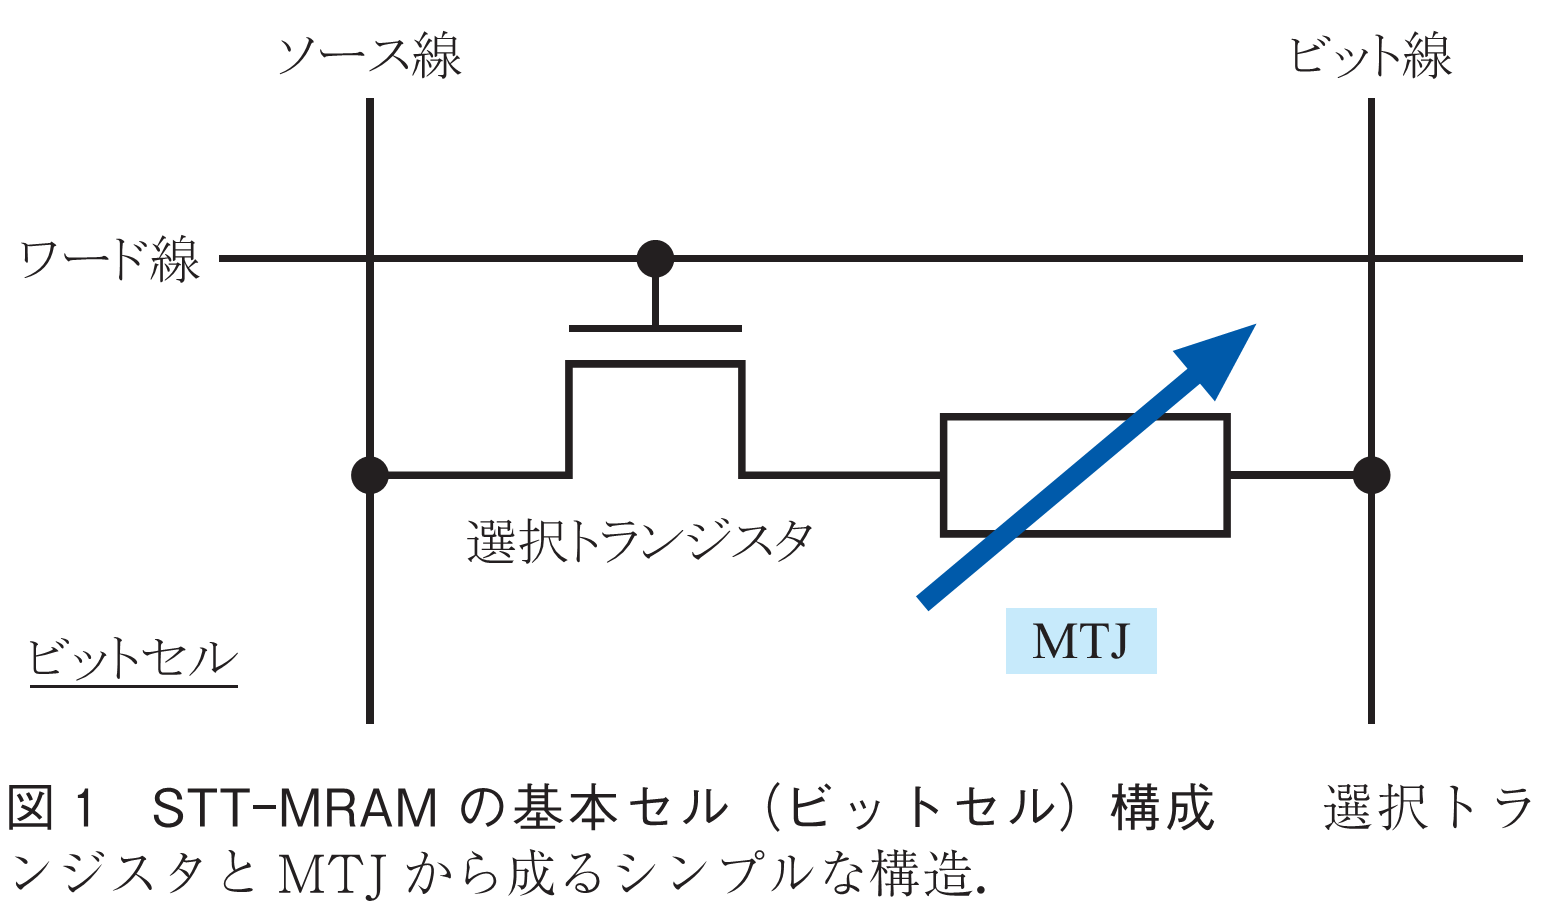 図1　STT-MRAMの基本セル（ビットセル）構成　　選択トランジスタとMTJから成るシンプルな構造．